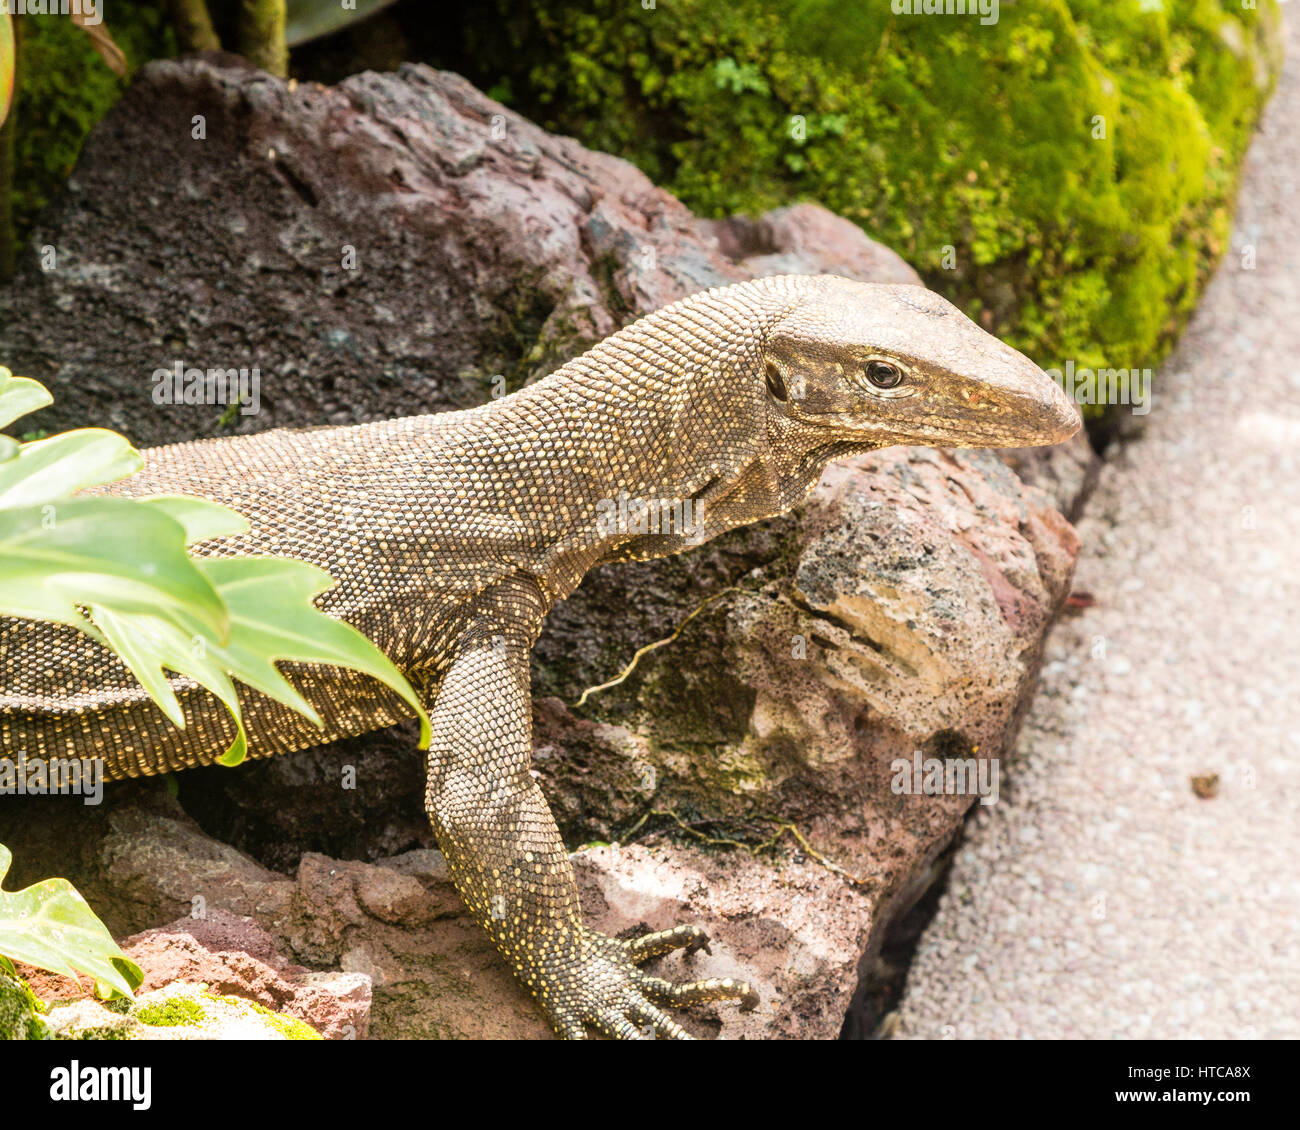 Brouillé (Varanus nebulosus) monitor lizard, Singapore Botanic Gardens,Asia Banque D'Images